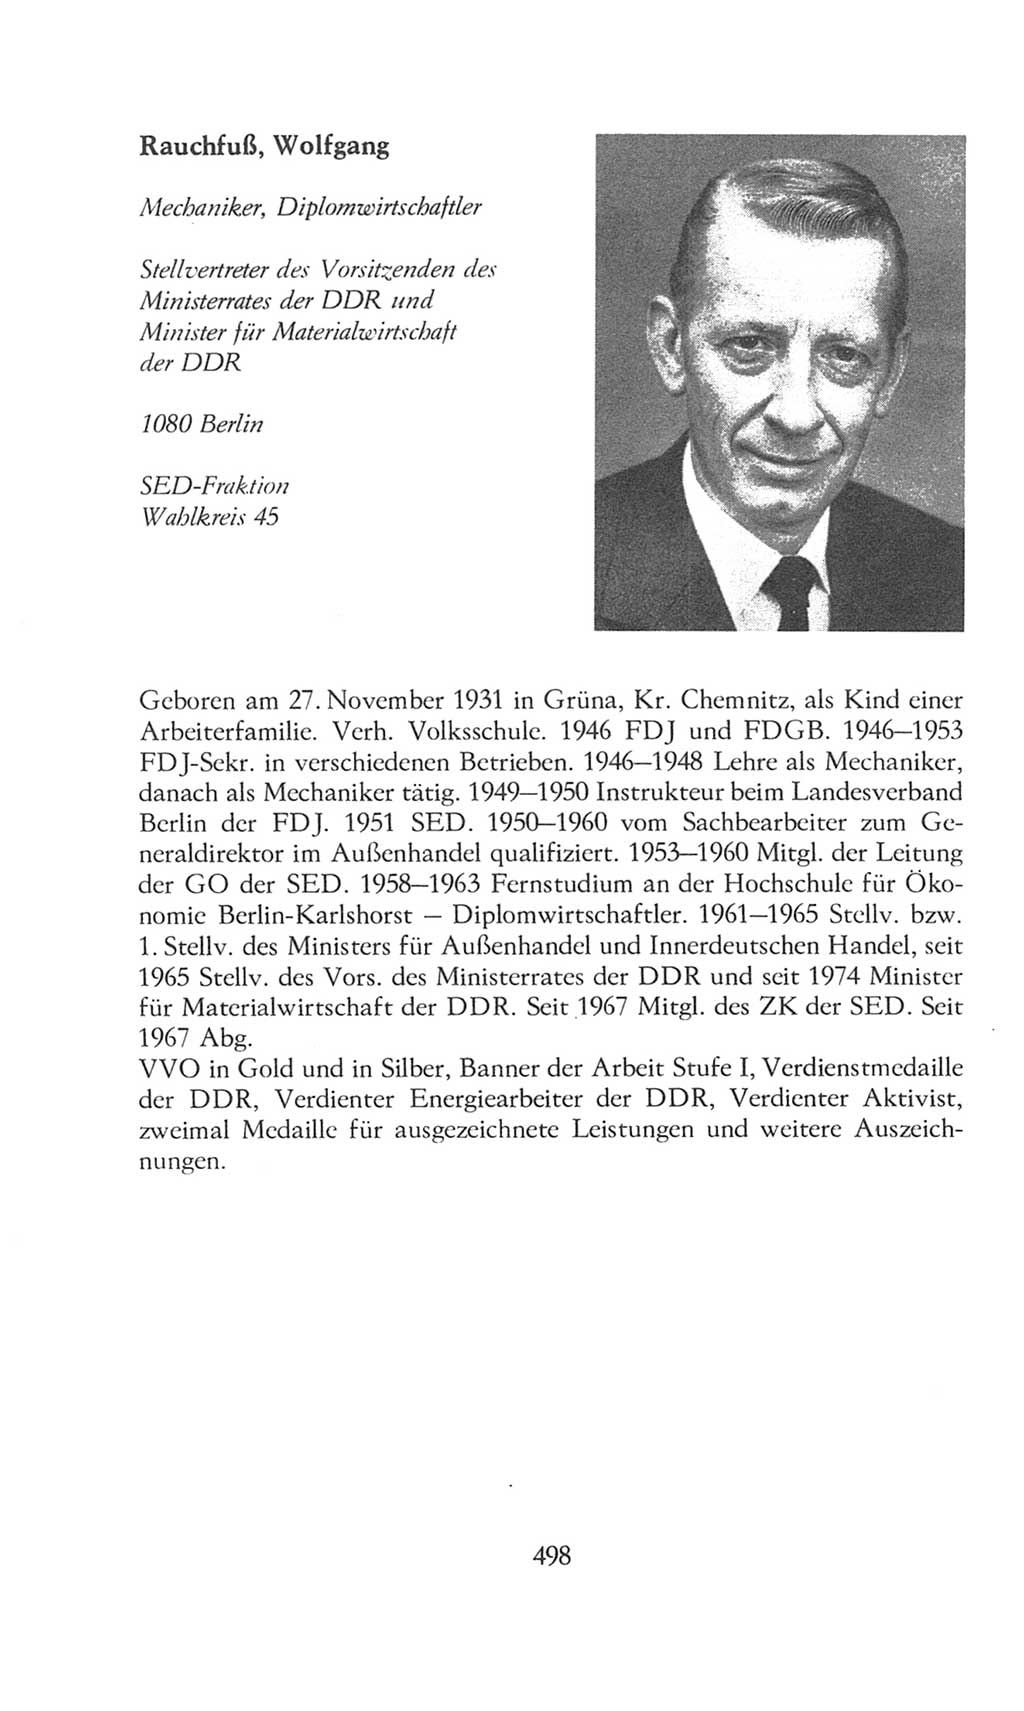 Volkskammer (VK) der Deutschen Demokratischen Republik (DDR), 8. Wahlperiode 1981-1986, Seite 498 (VK. DDR 8. WP. 1981-1986, S. 498)